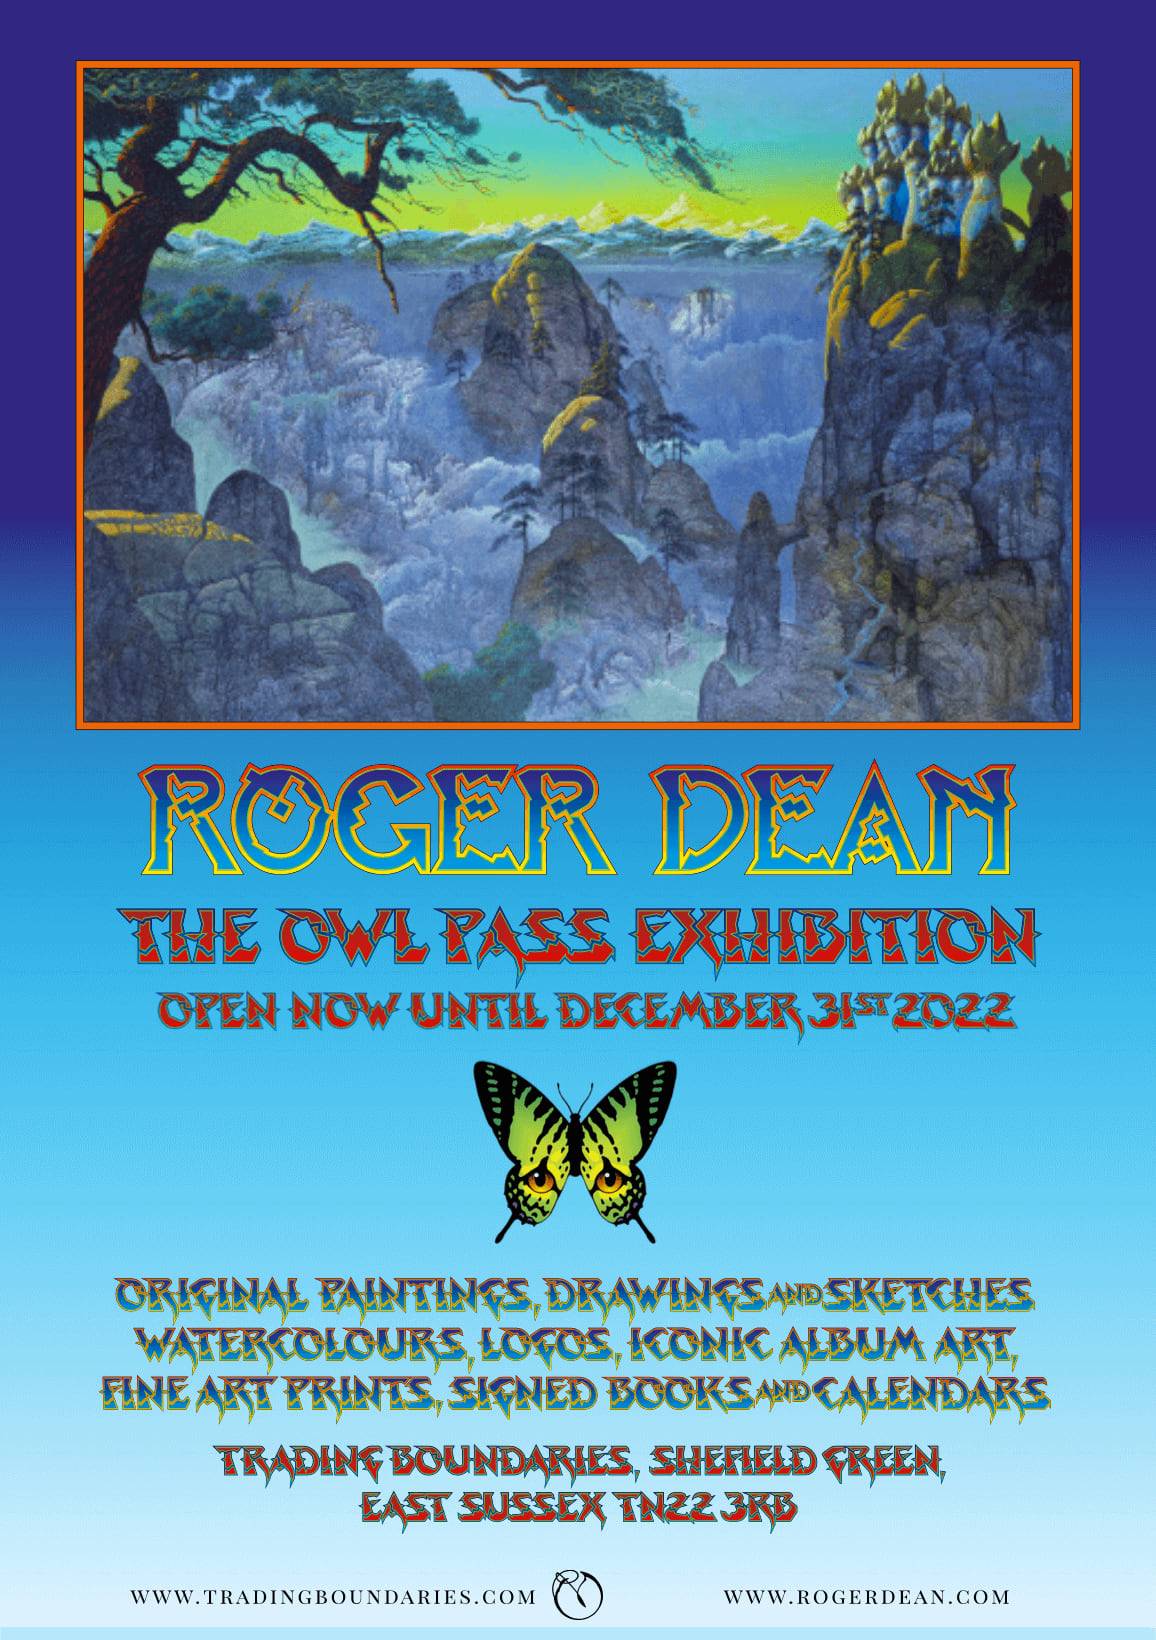  Roger Dean Artist Exhibition 2021 / 2022